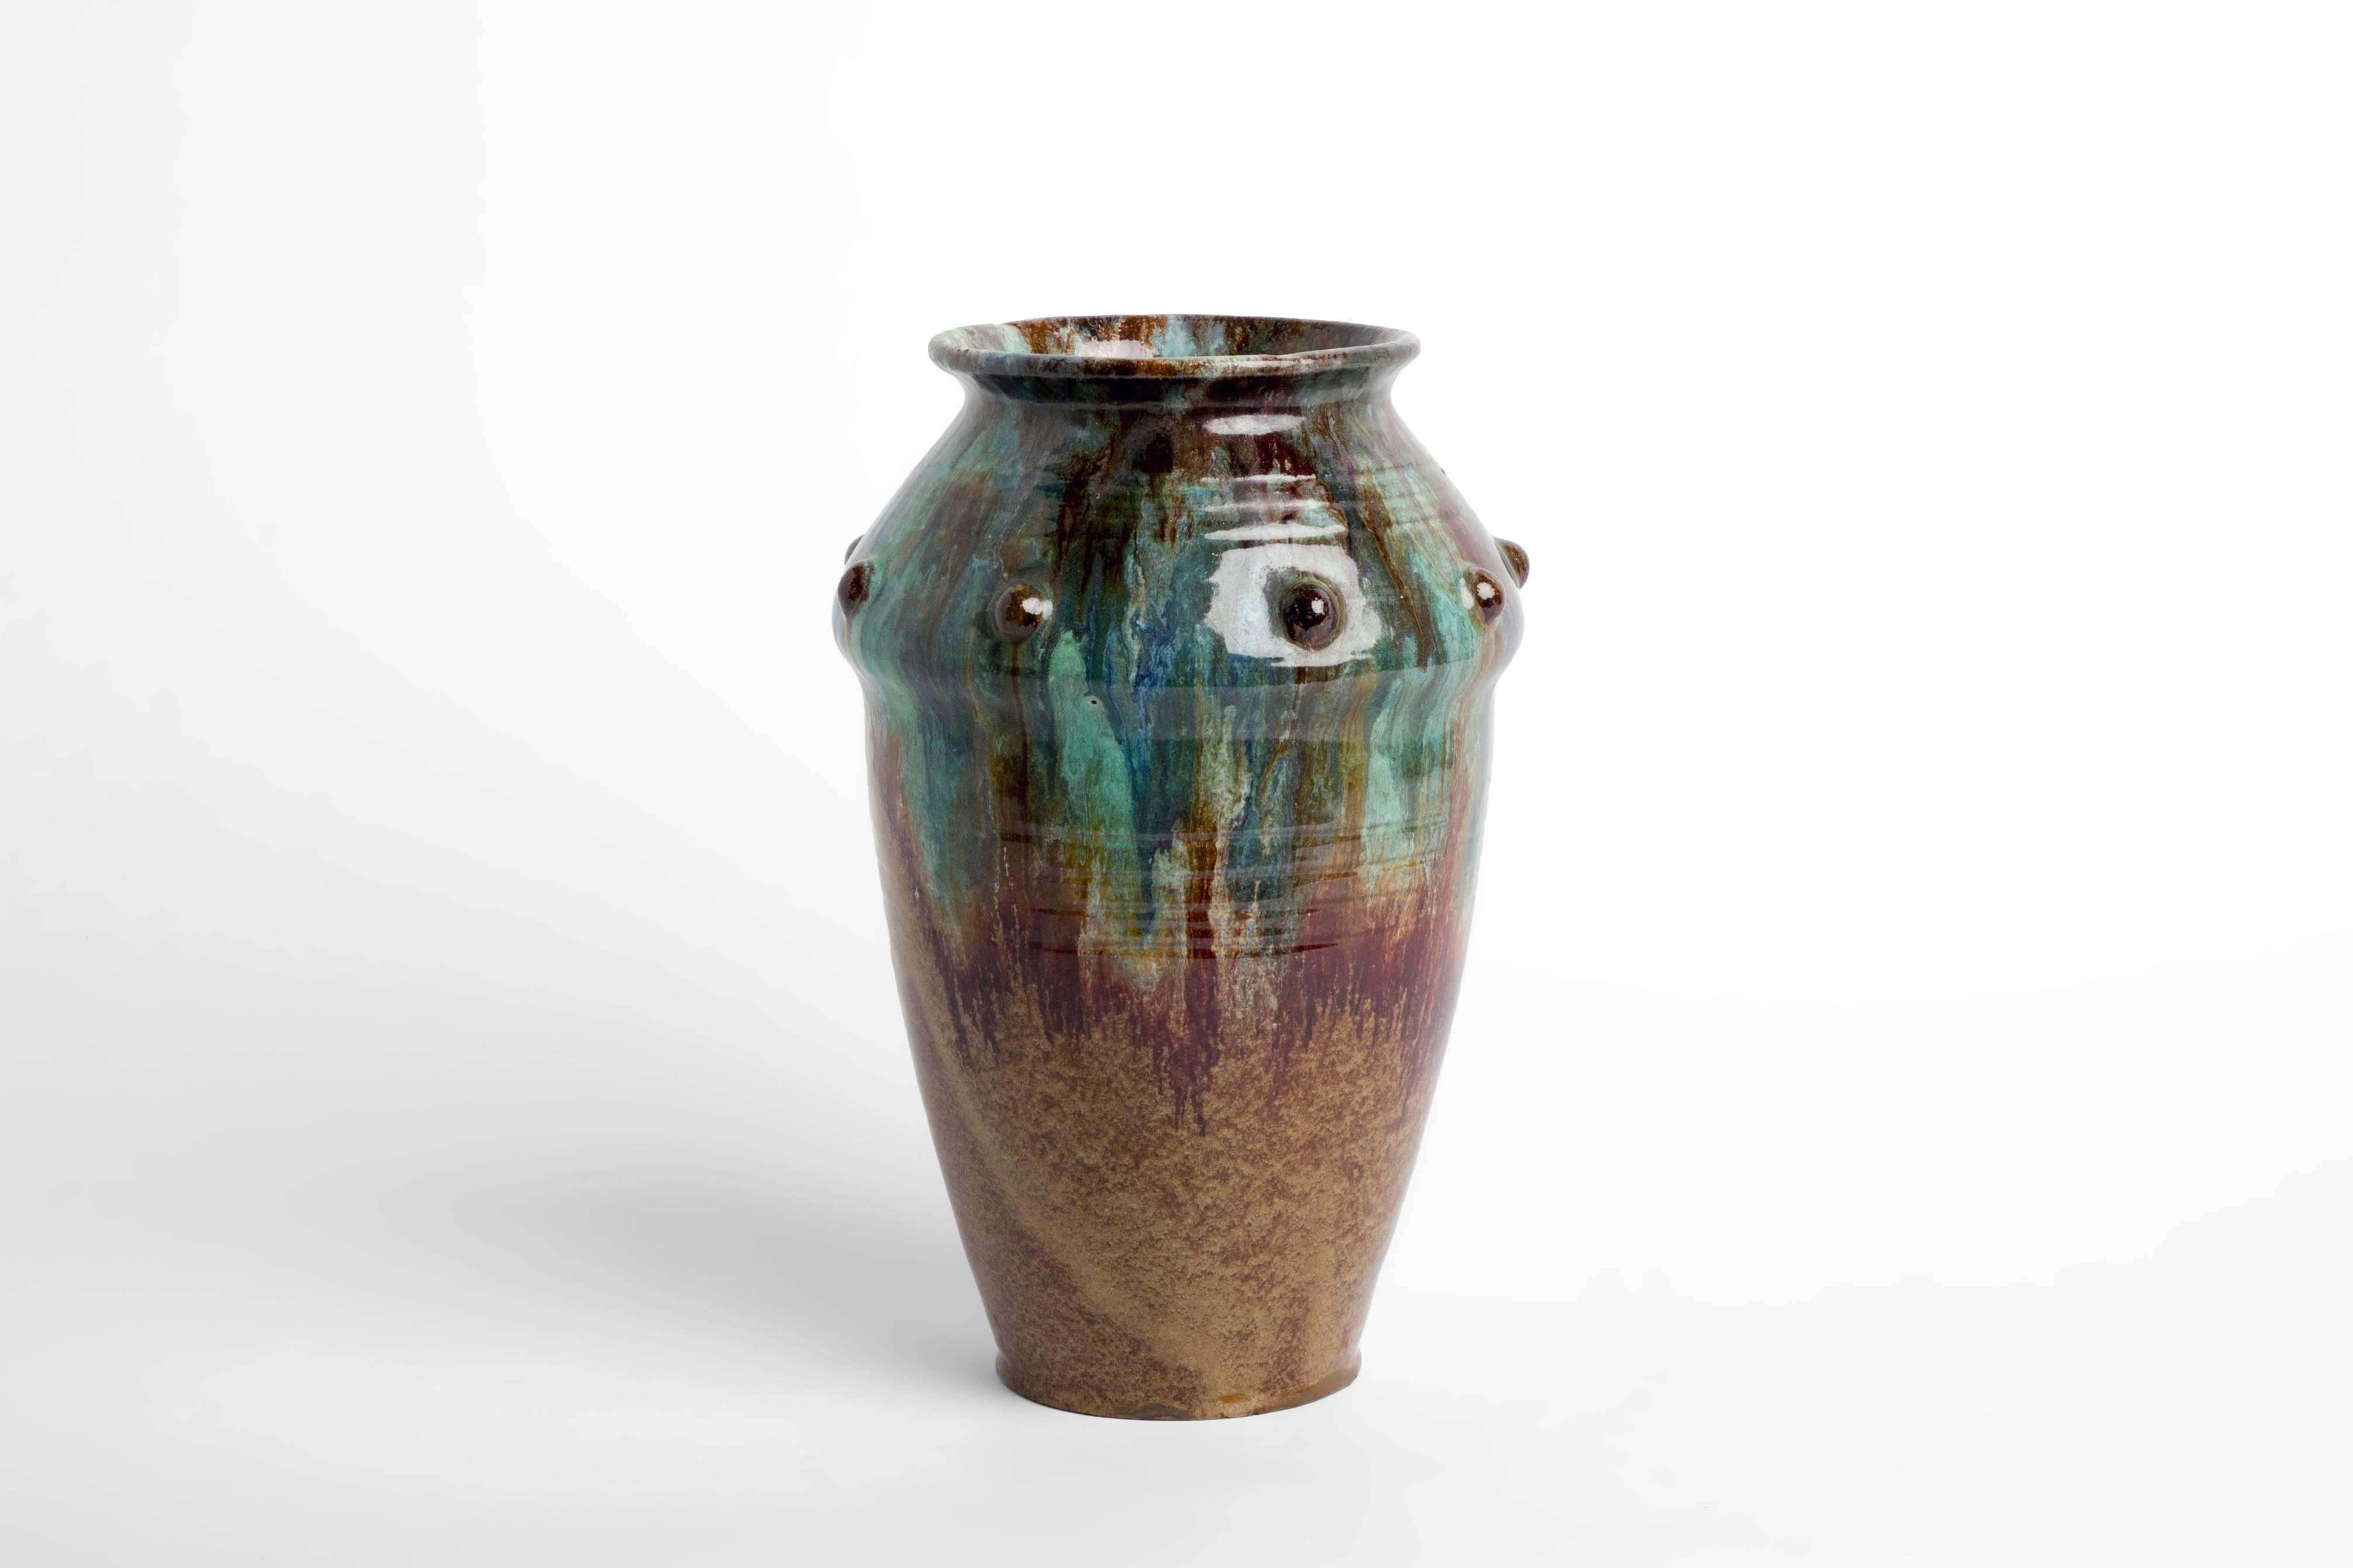 Vintage glazed ceramic vase, circa 1950s. 

Bottom diameter: 4.25".